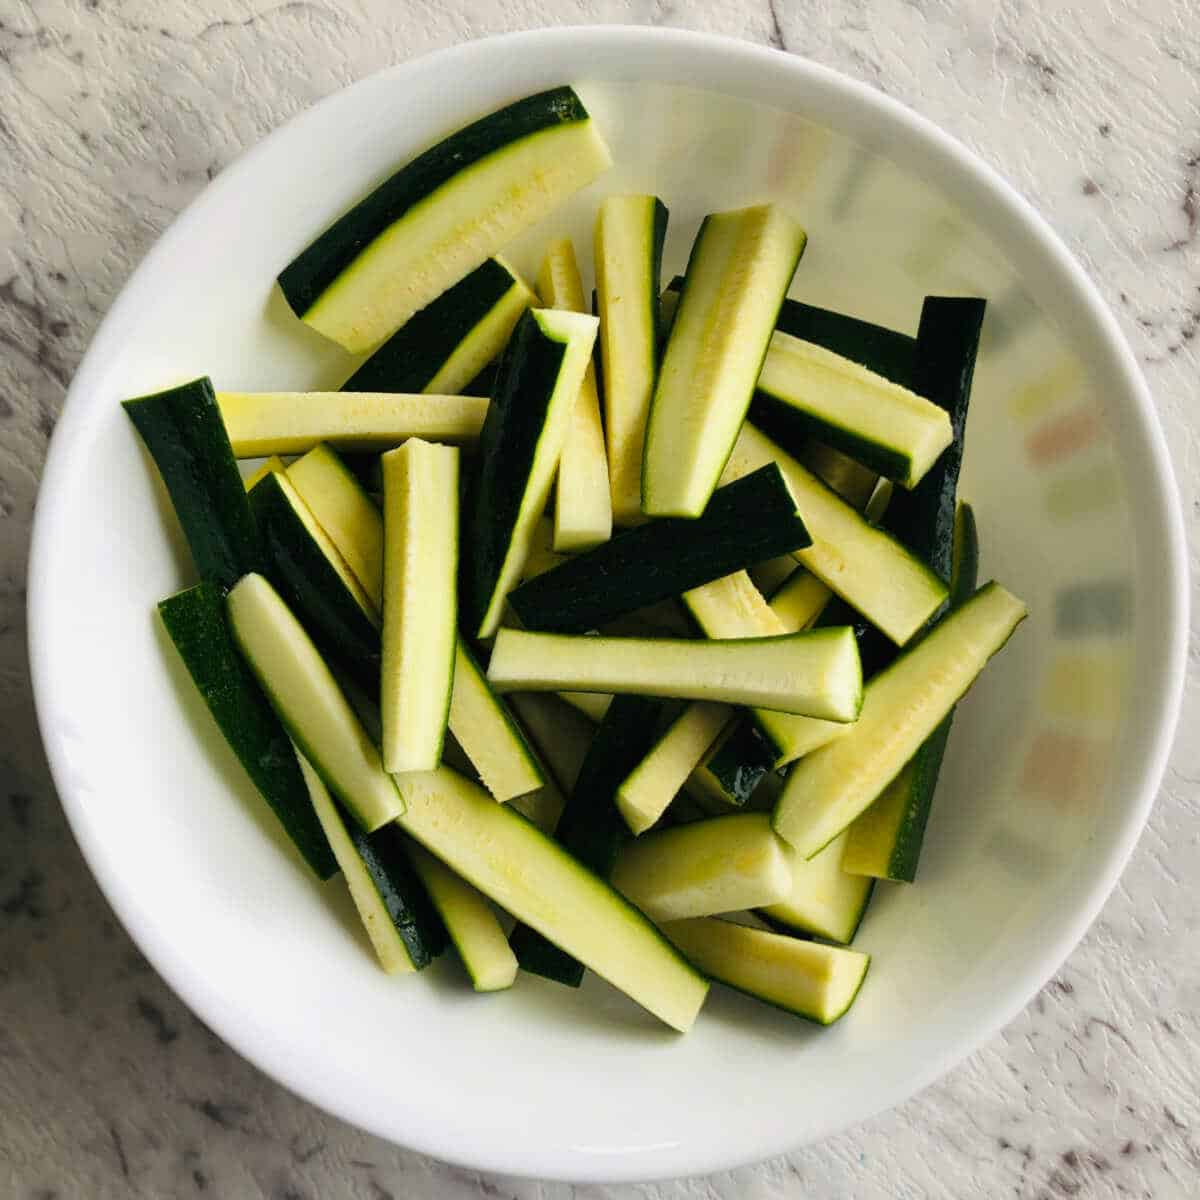 cut zucchini in fries shape.